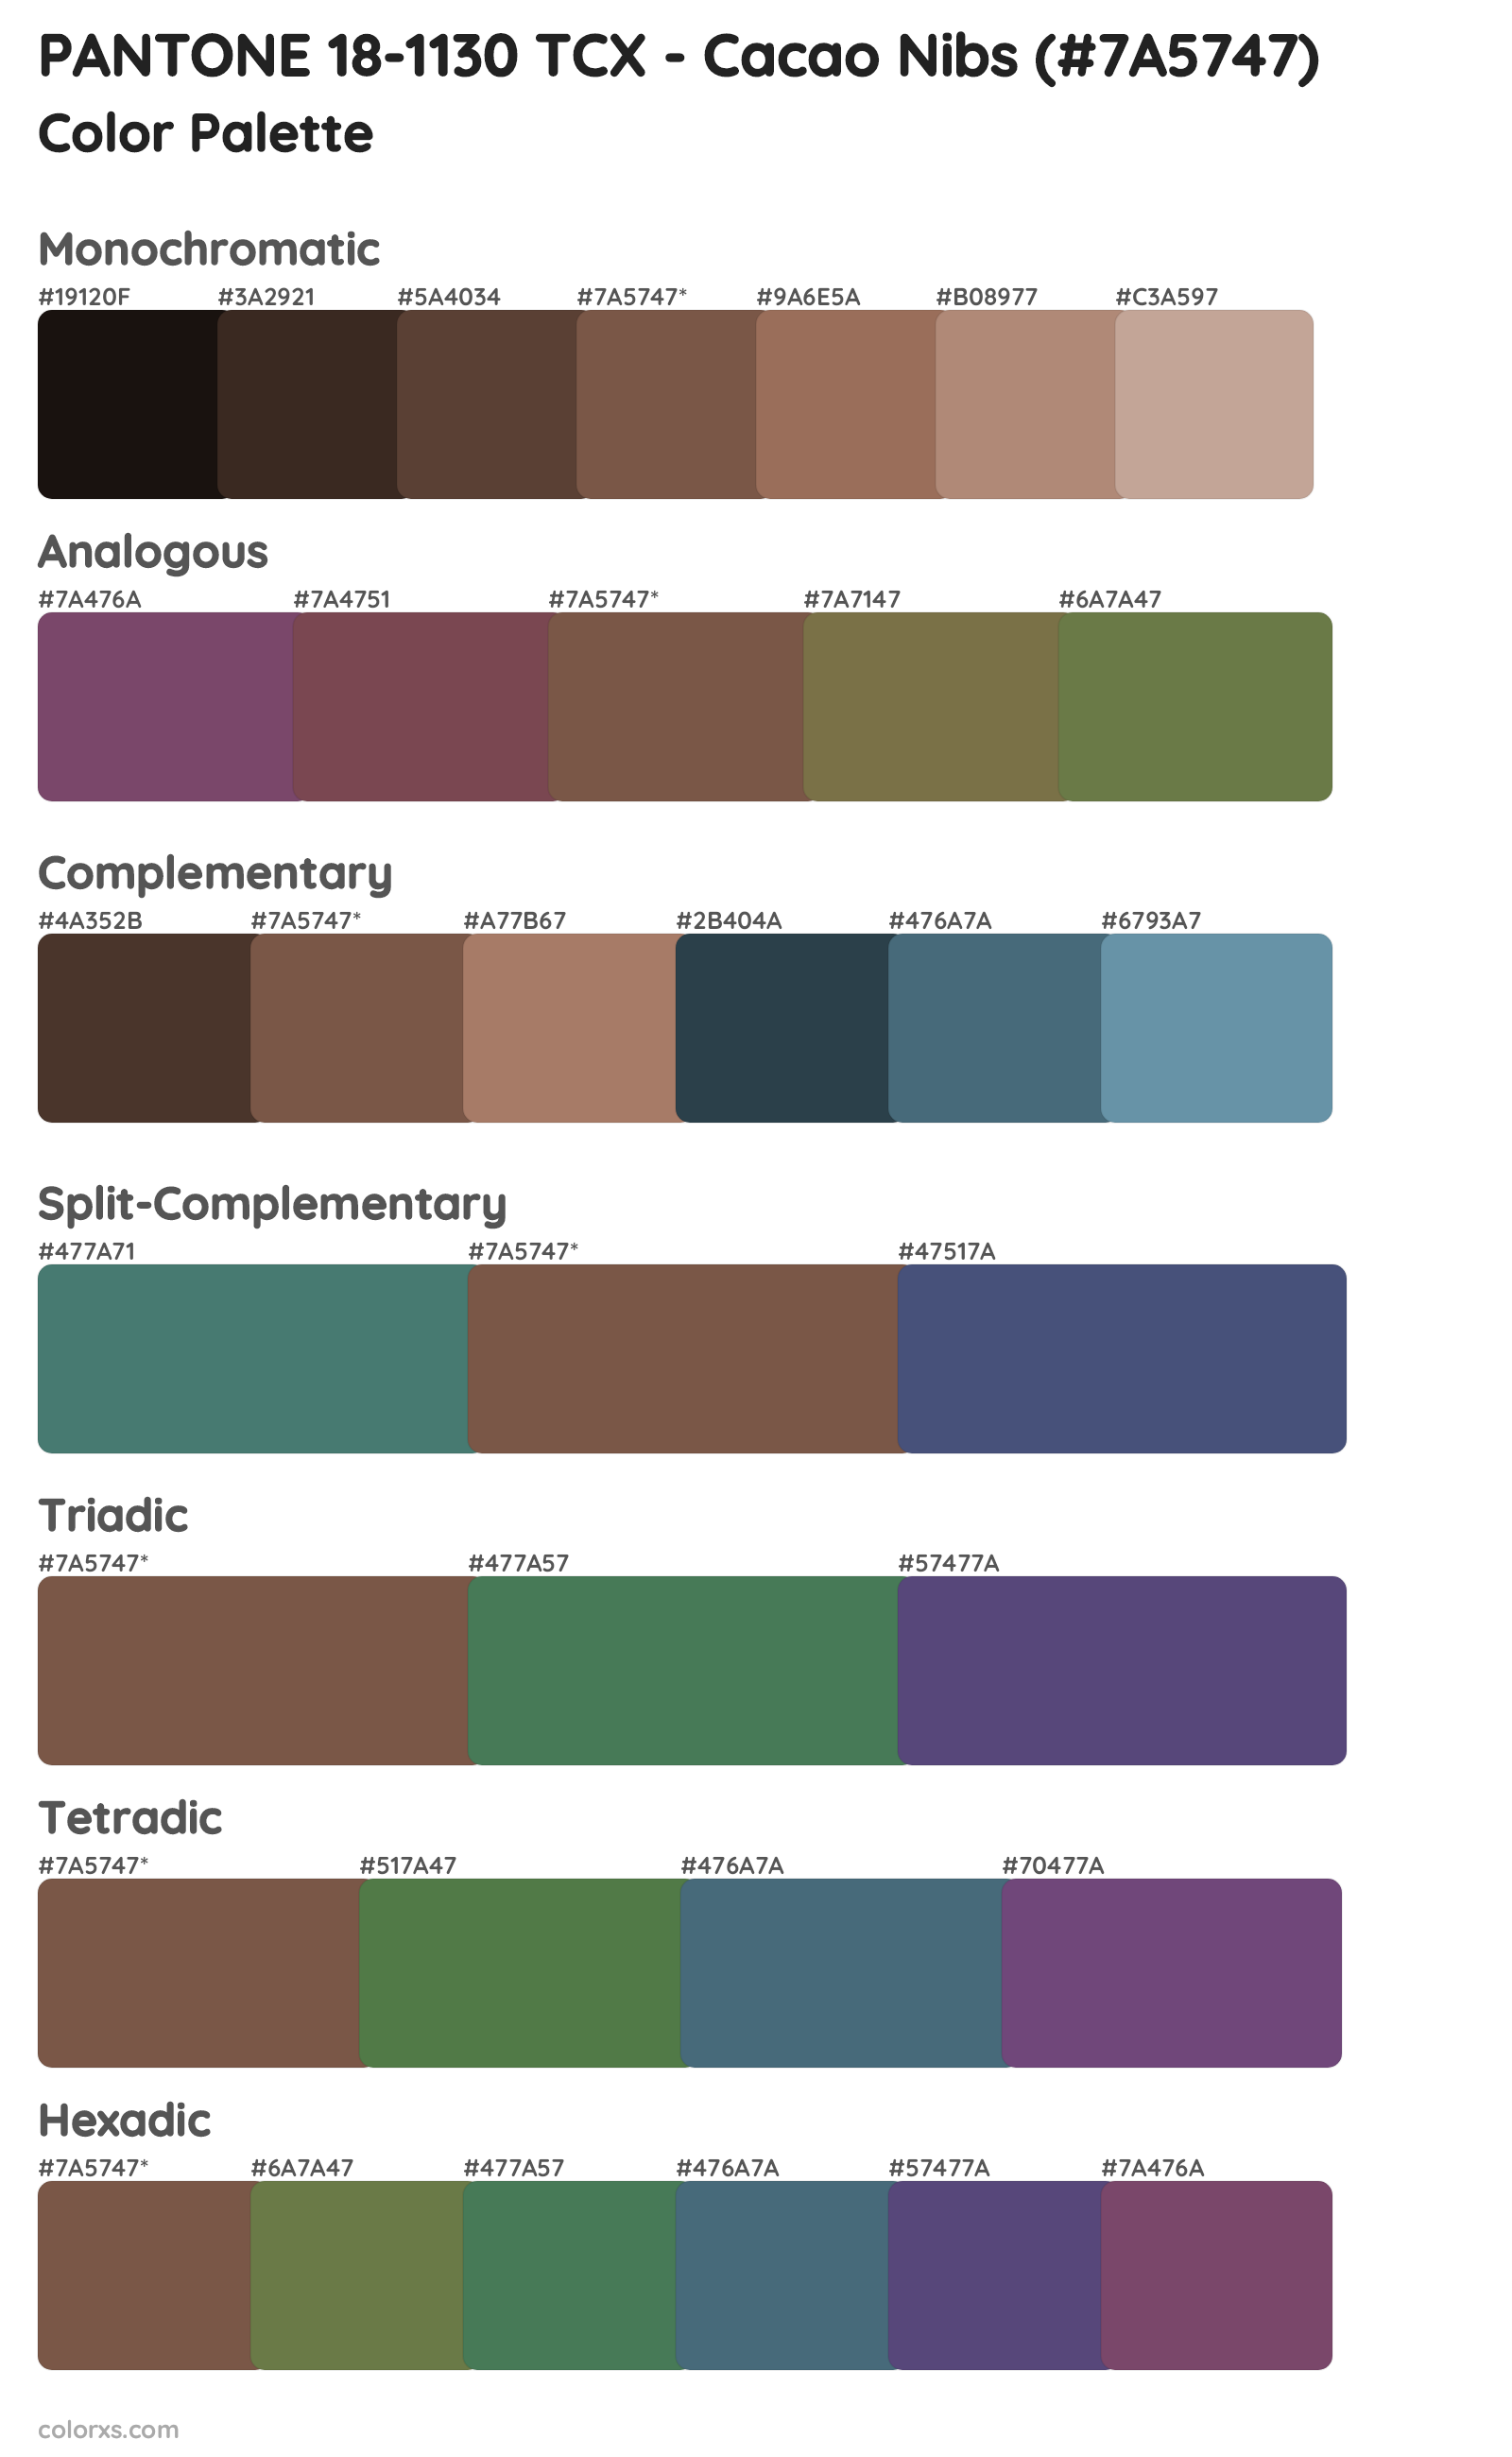 PANTONE 18-1130 TCX - Cacao Nibs Color Scheme Palettes